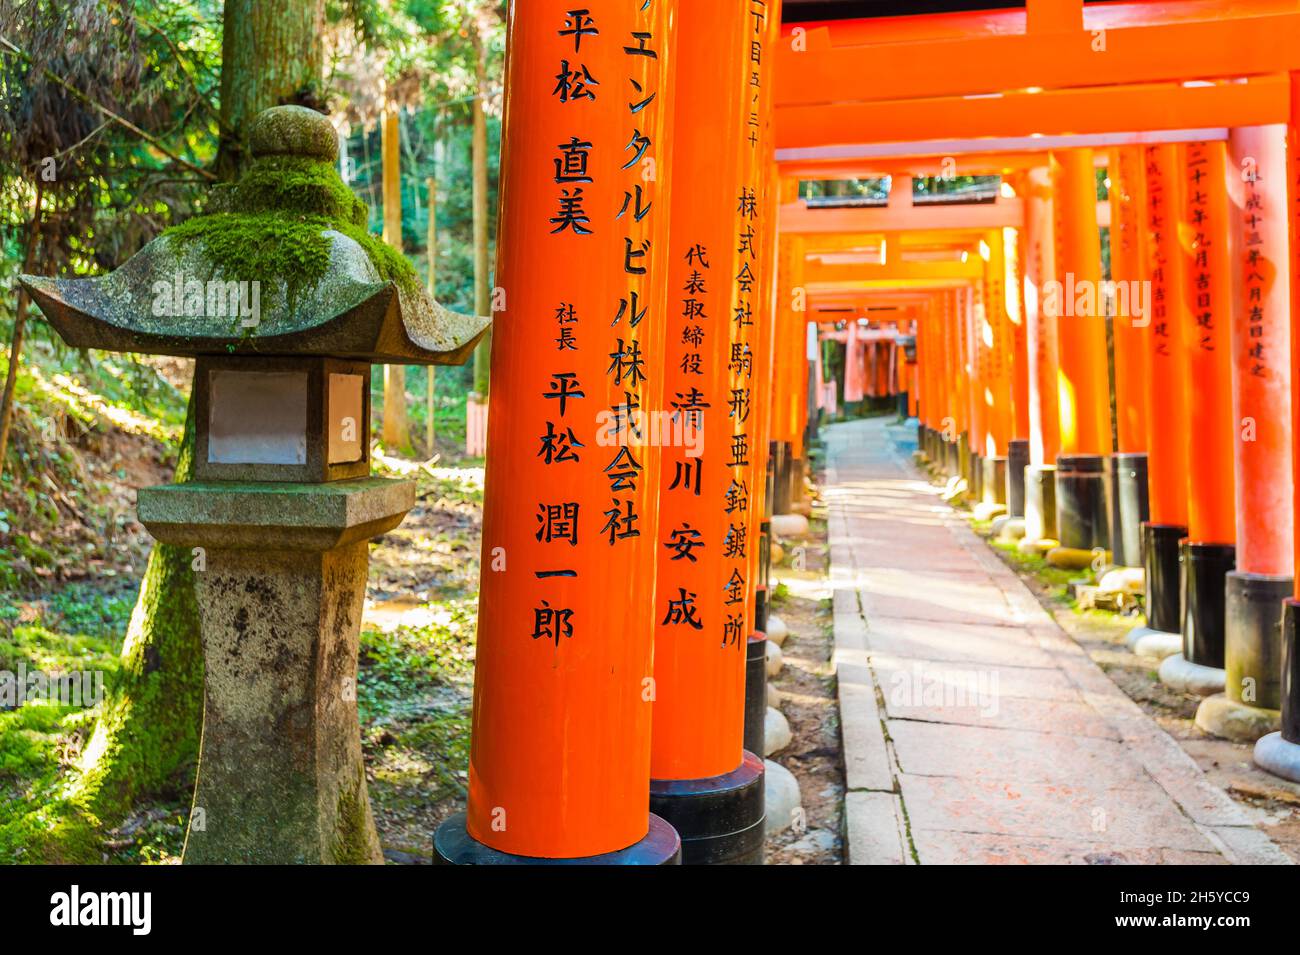 Le début de l'une des nombreuses portes de Torii ornant les nombreuses pistes de randonnée autour du sanctuaire de Fishimi Inari Taisha shinto à Kyoto, au Japon. Banque D'Images